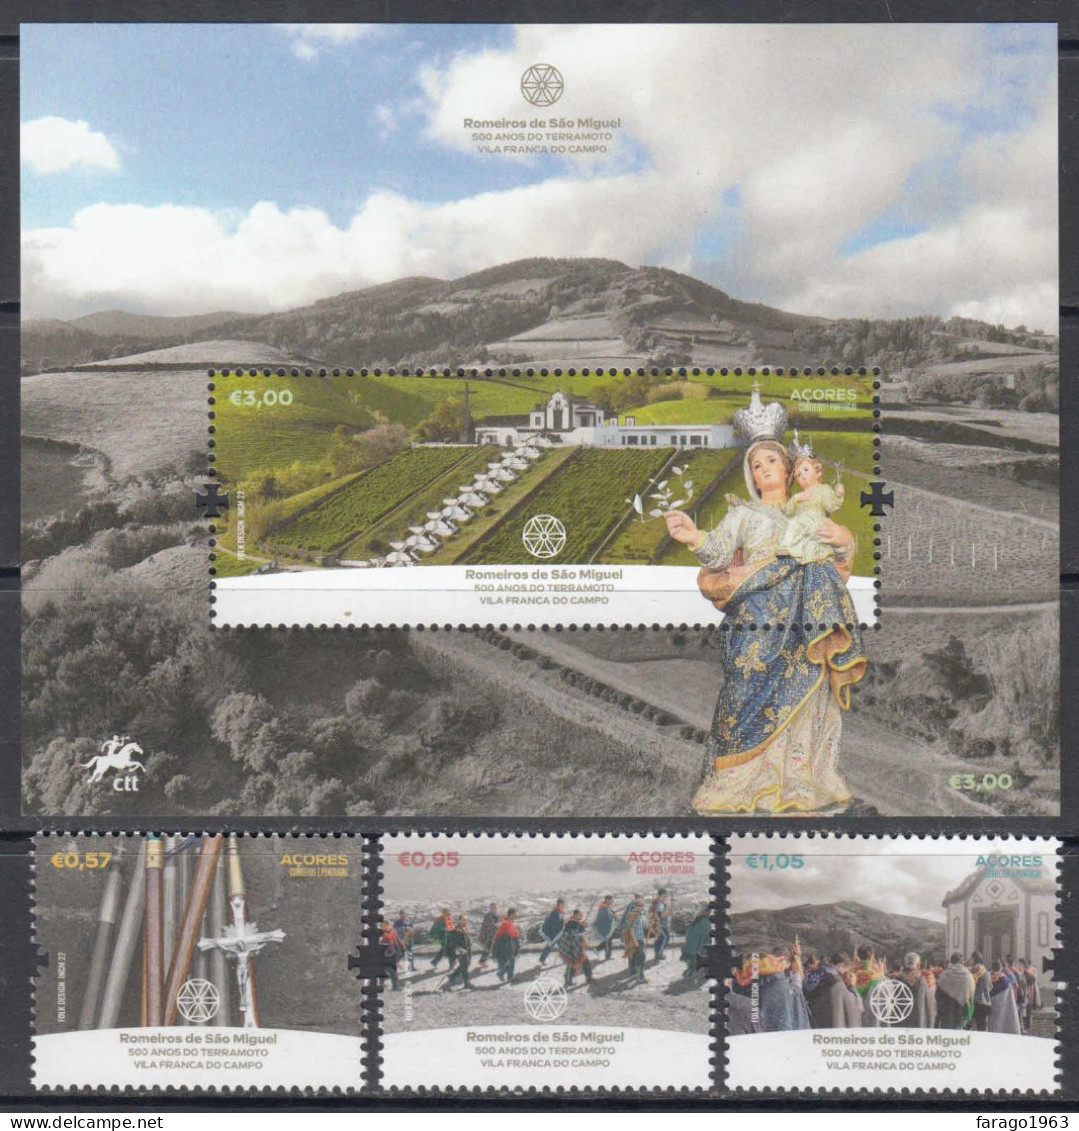 2022 Azores Acores Romeiros De Sao Miguel Complete Set Of 3 + Souvenir Sheet MNH @ BELOW FACE VALUE - Azores